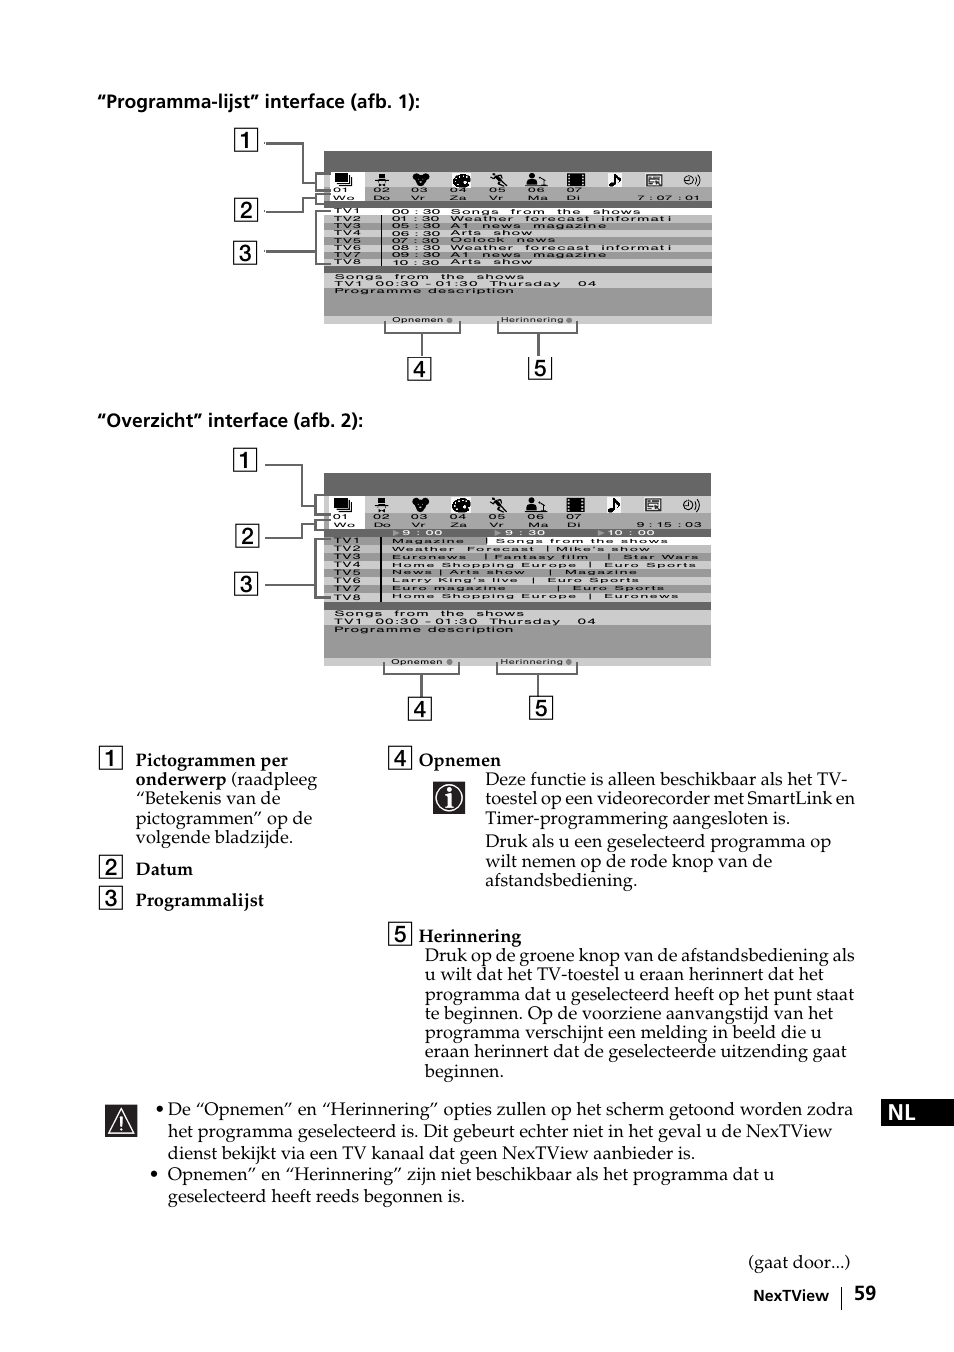 Datum, Programmalijst, Gaat door...) | Nextview | Sony KE-42MR1 Manuale d'uso | Pagina 135 / 302